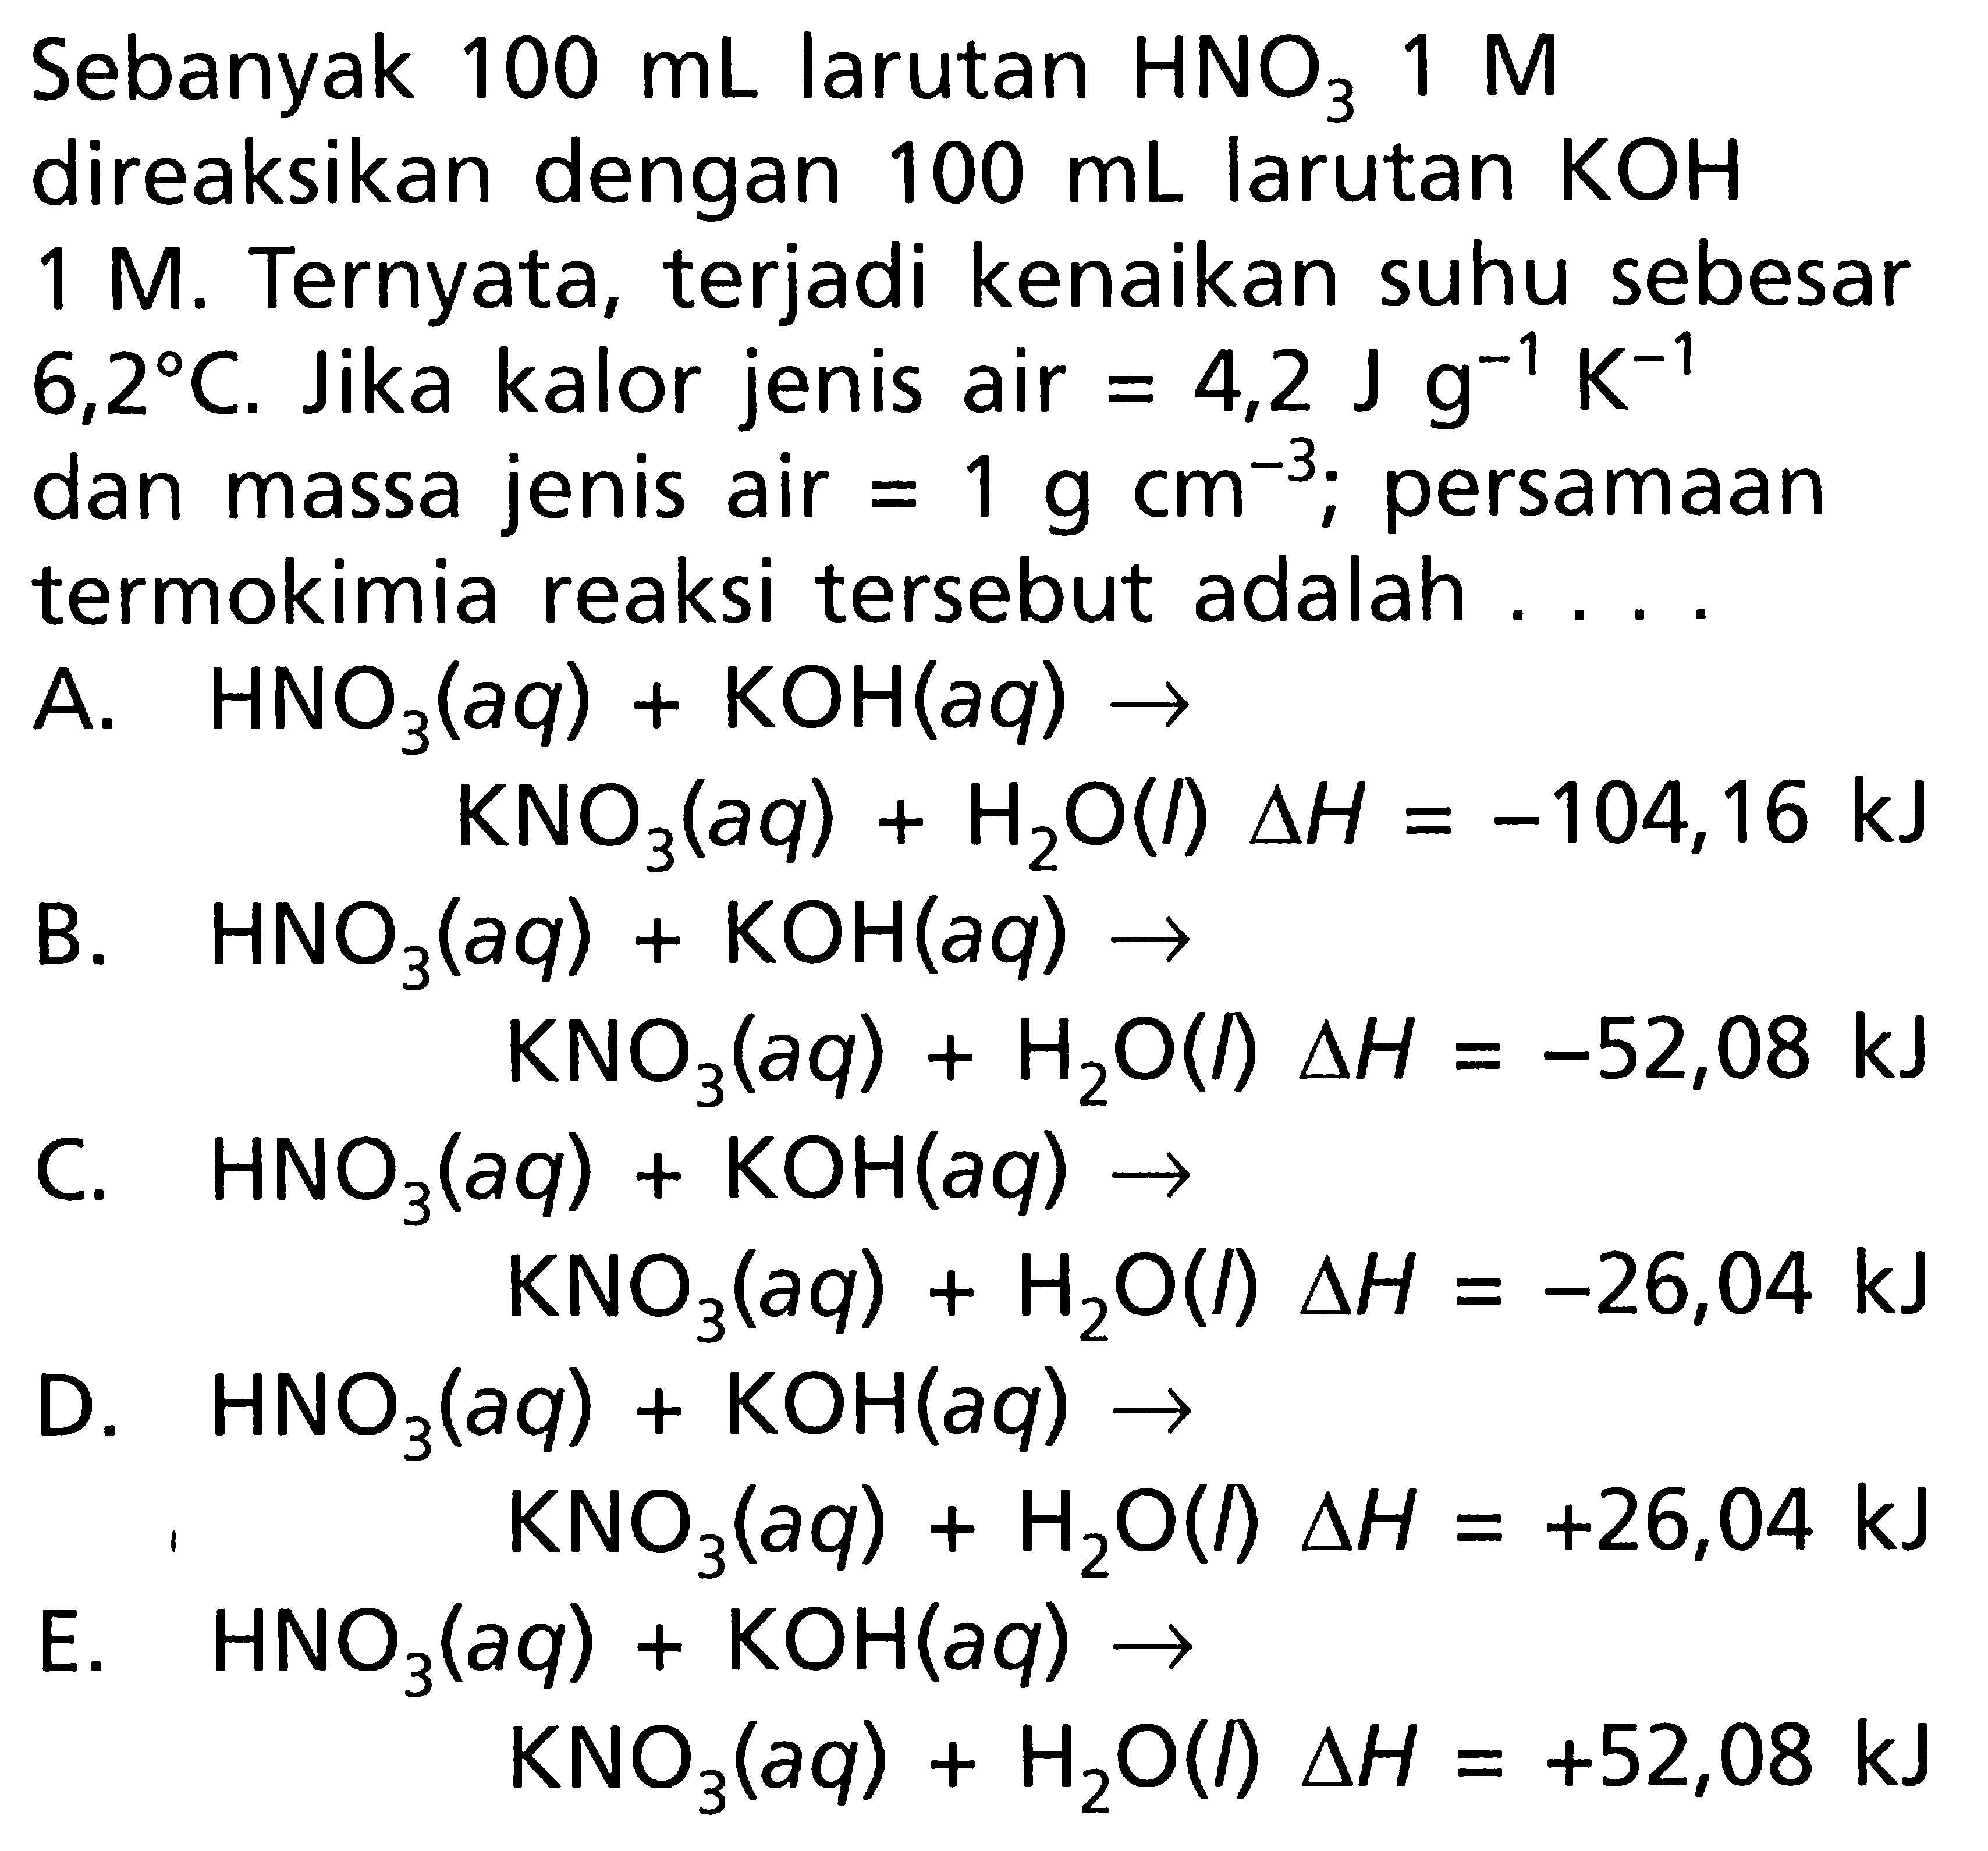 Sebanyak 100 mL larutan HNO3 1 M direaksikan dengan 100 mL larutan KOH 1 M. Ternyata, terjadi kenaikan suhu sebesar 6,2 C. Jika kalor jenis air = 4,2 J g^-1 K^-1 dan massa jenis air = 1 g cm^-3; persamaan termokimia reaksi tersebut adalah ...